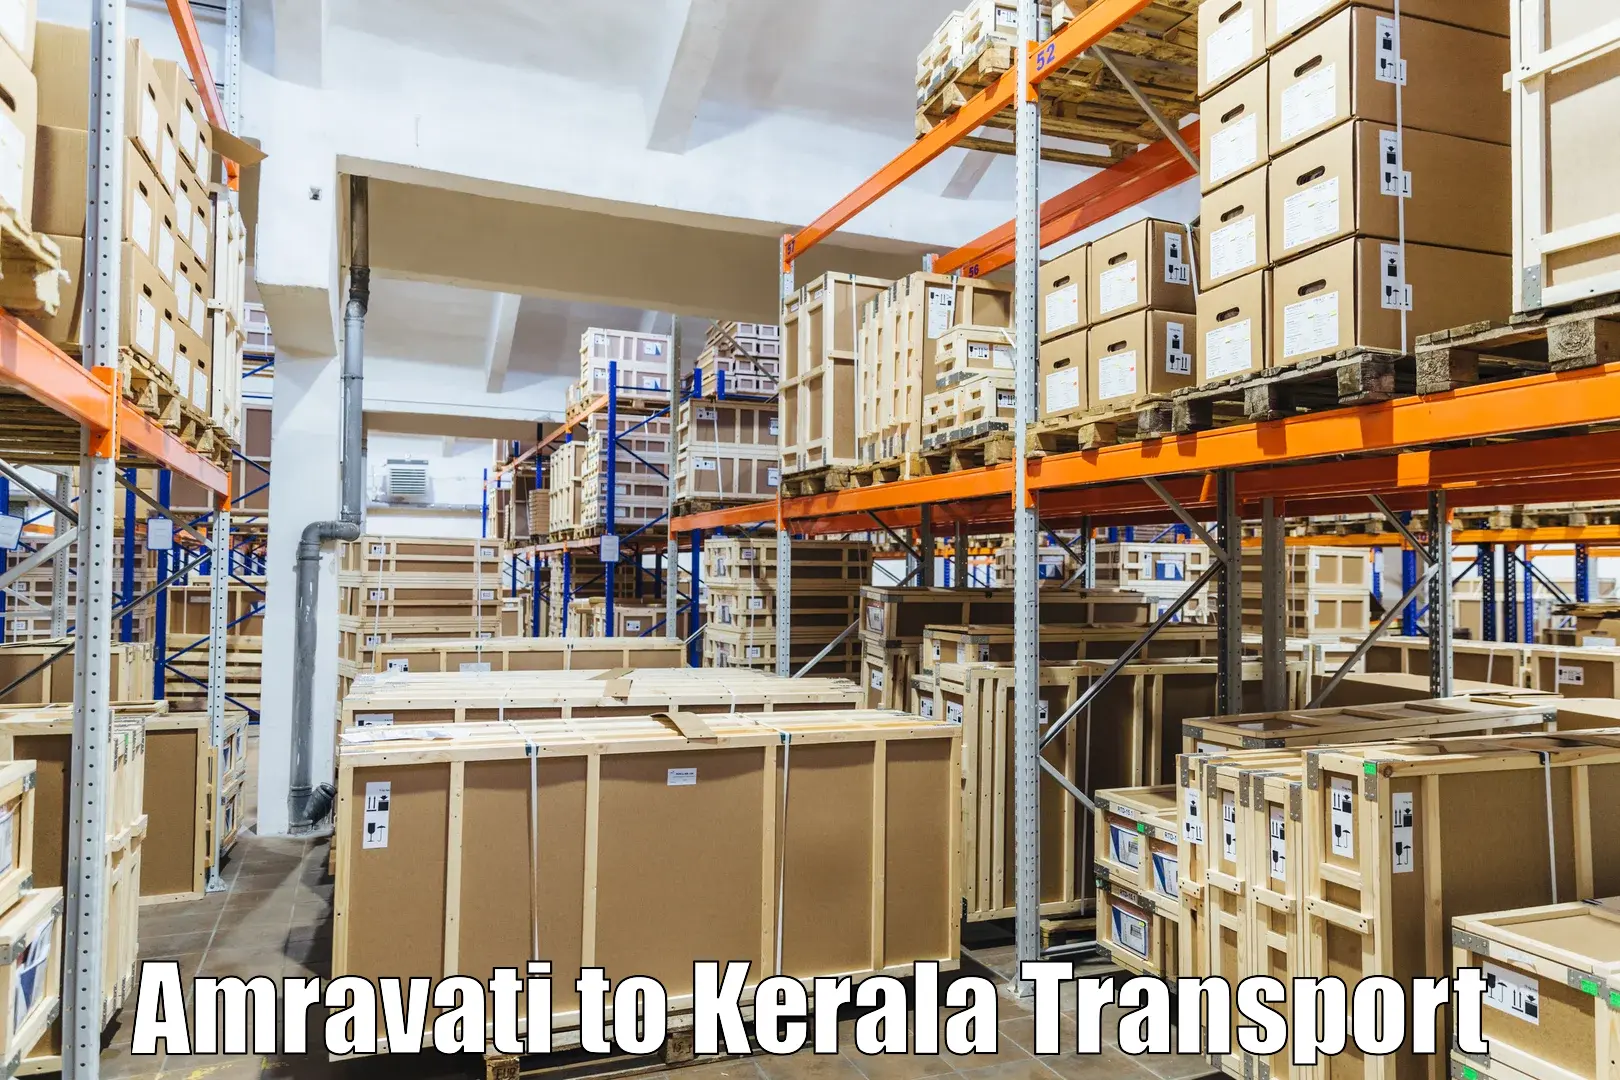 Truck transport companies in India Amravati to Mundakayam